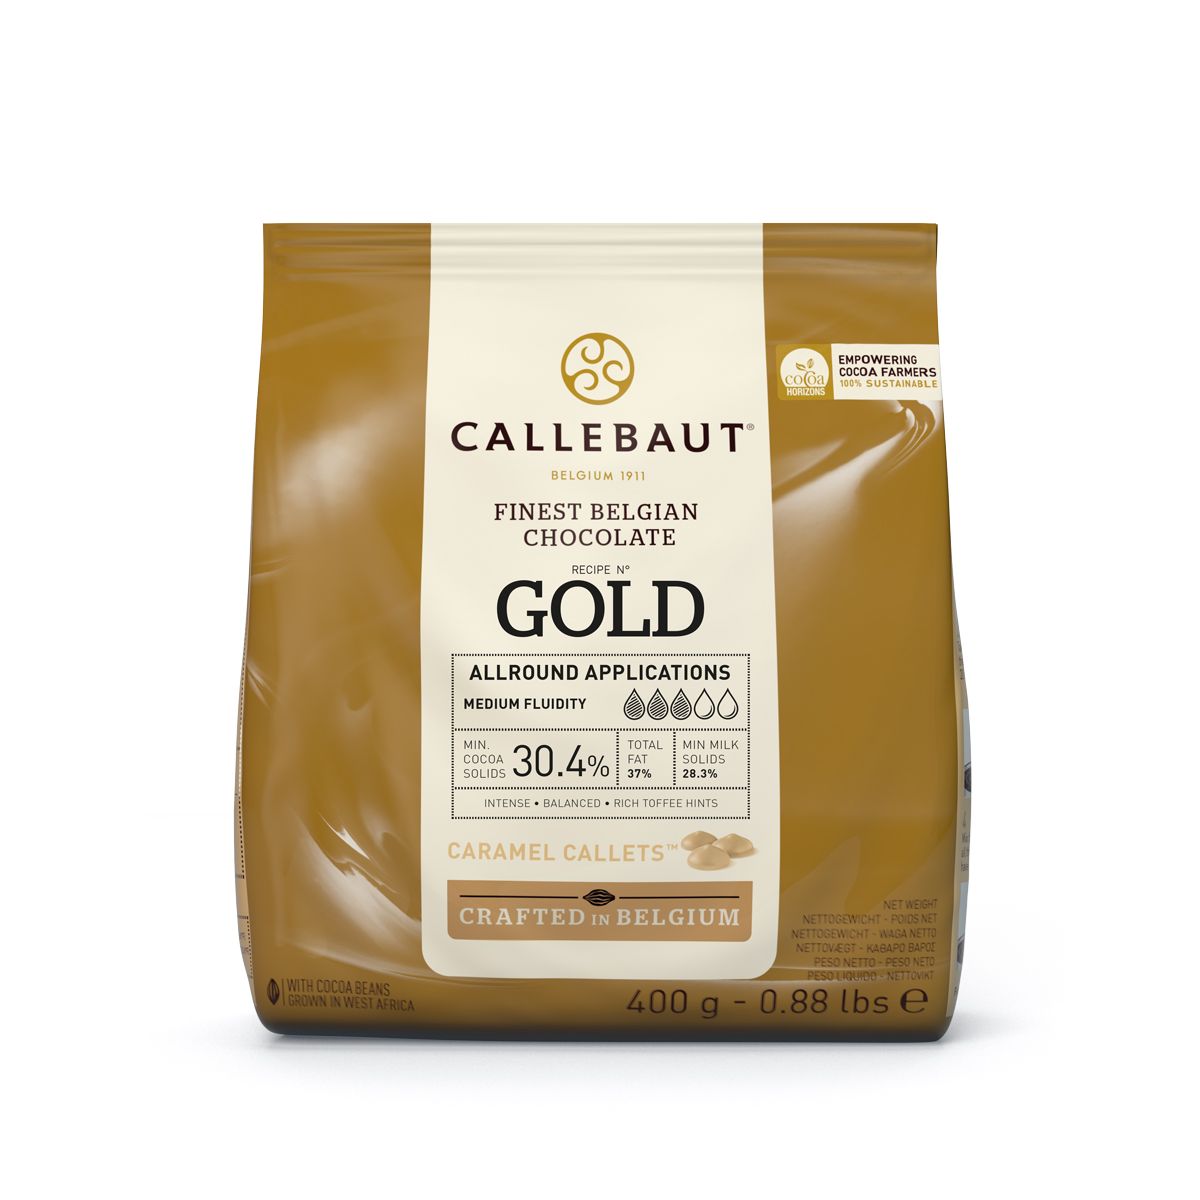 Callebaut Callets 400g - Gold - Karamell